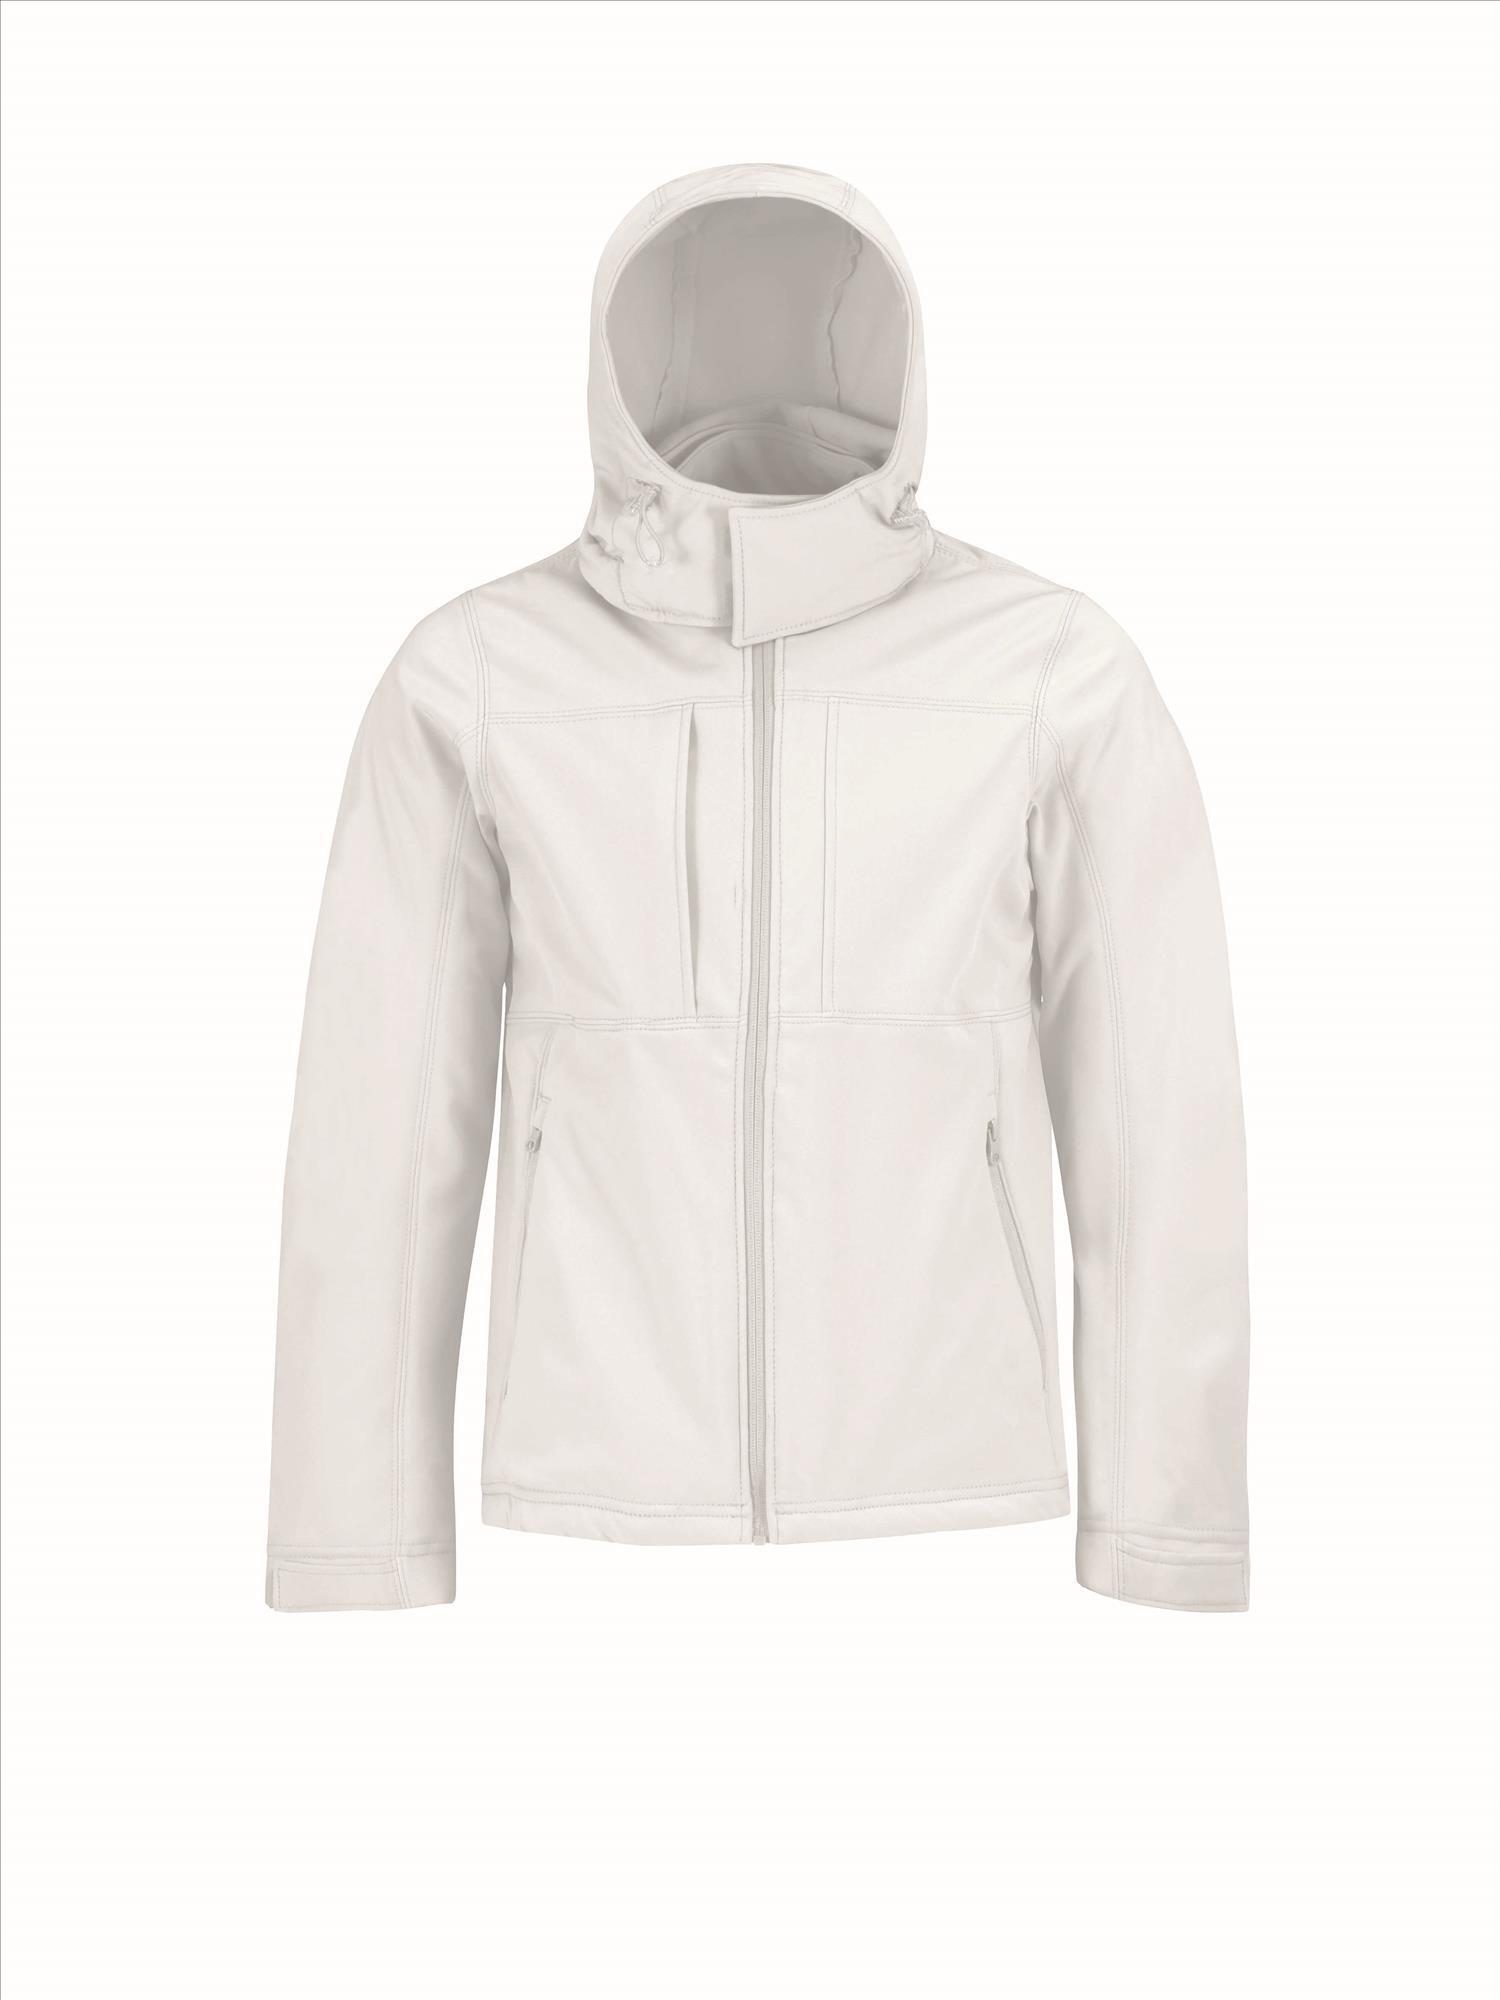 Softshell jas voor mannen wit met afneembare en verstelbare capuchon